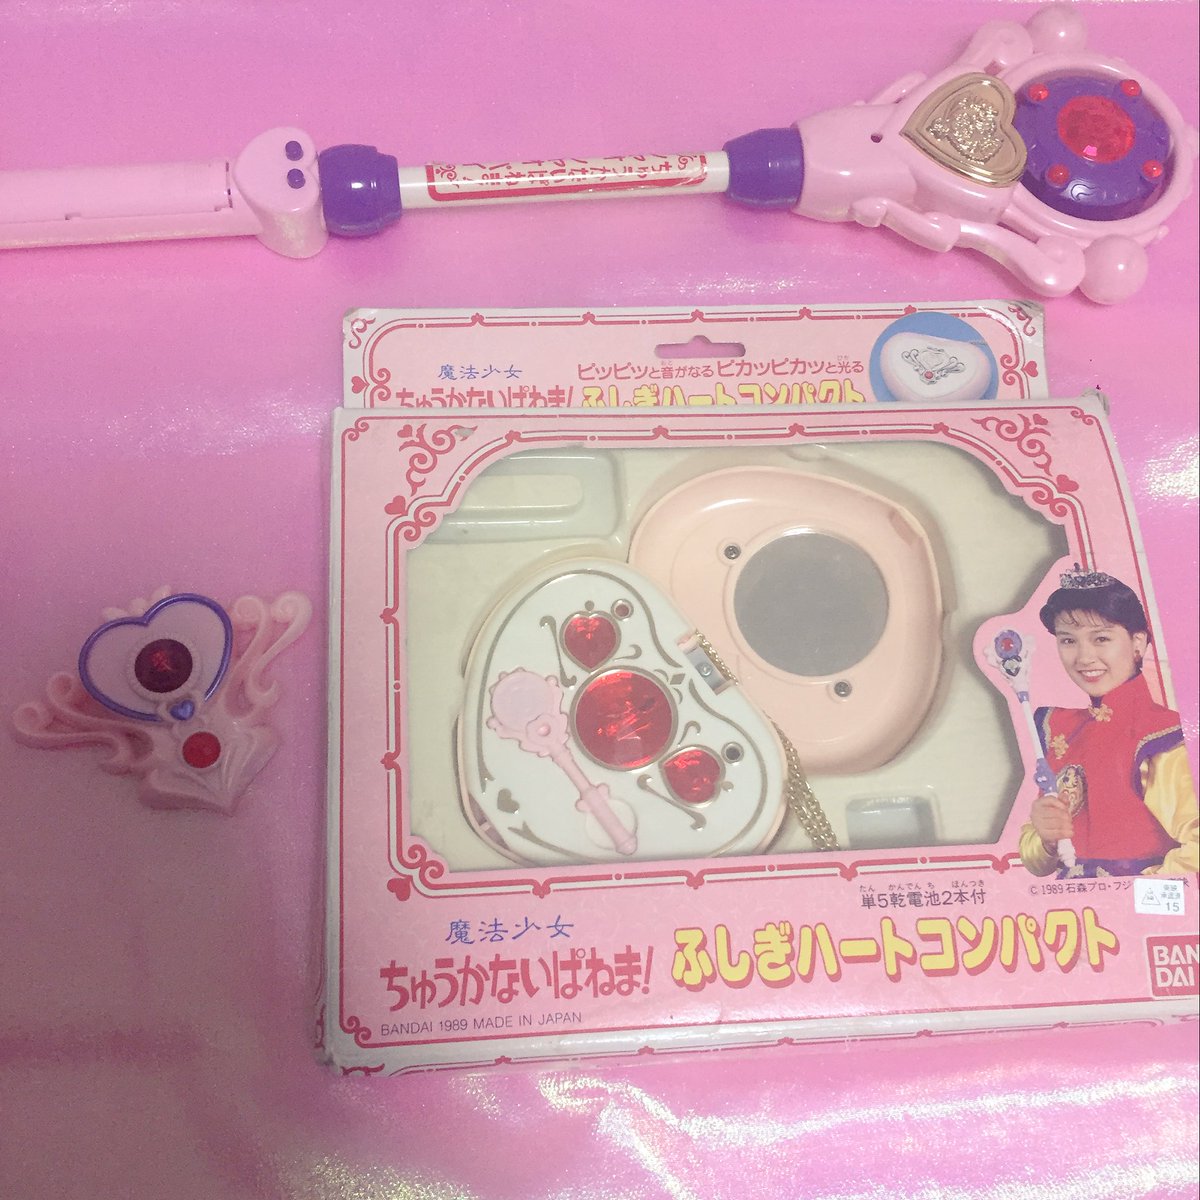 愛原るり子 Moe12月号掲載 בטוויטר ちゅうかないぱねまのおもちゃ ステッキ ブローチ コンパクト 今日のおもちゃ コンパクトの歴史 魔法少女おもちゃ